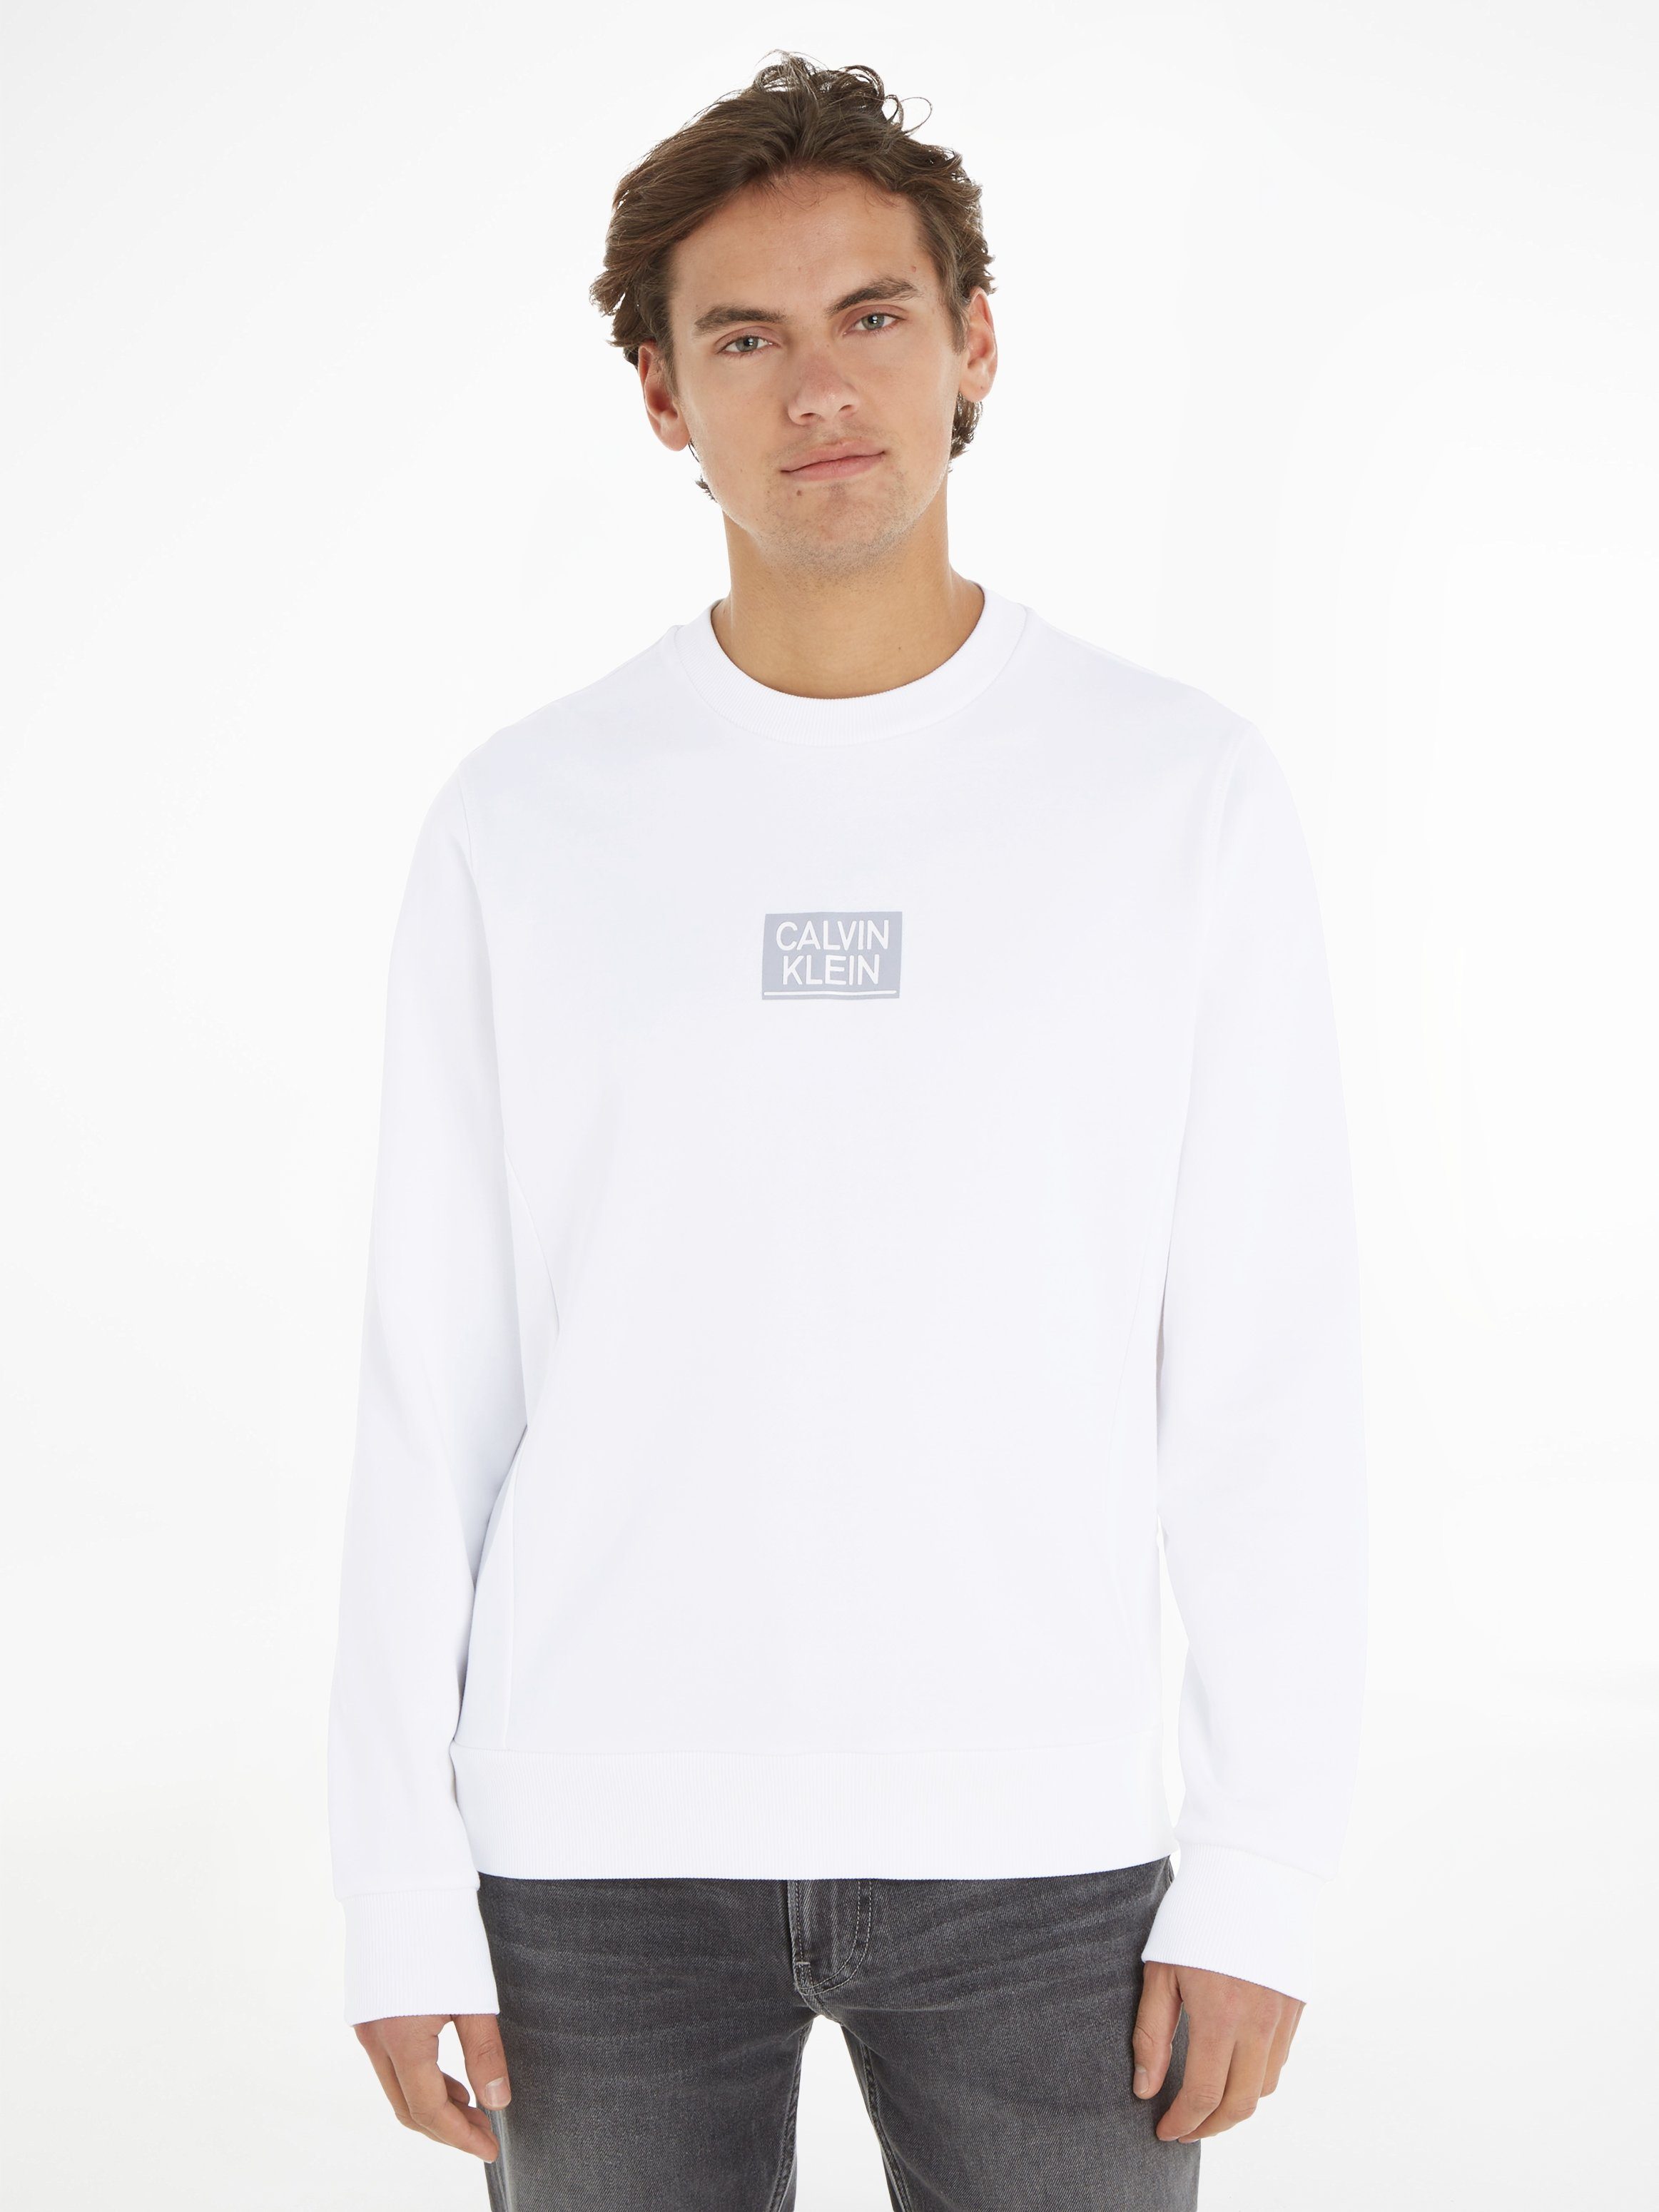 Calvin Klein SWEATSHIRT LOGO STENCIL Sweatshirt GLOSS White Bright